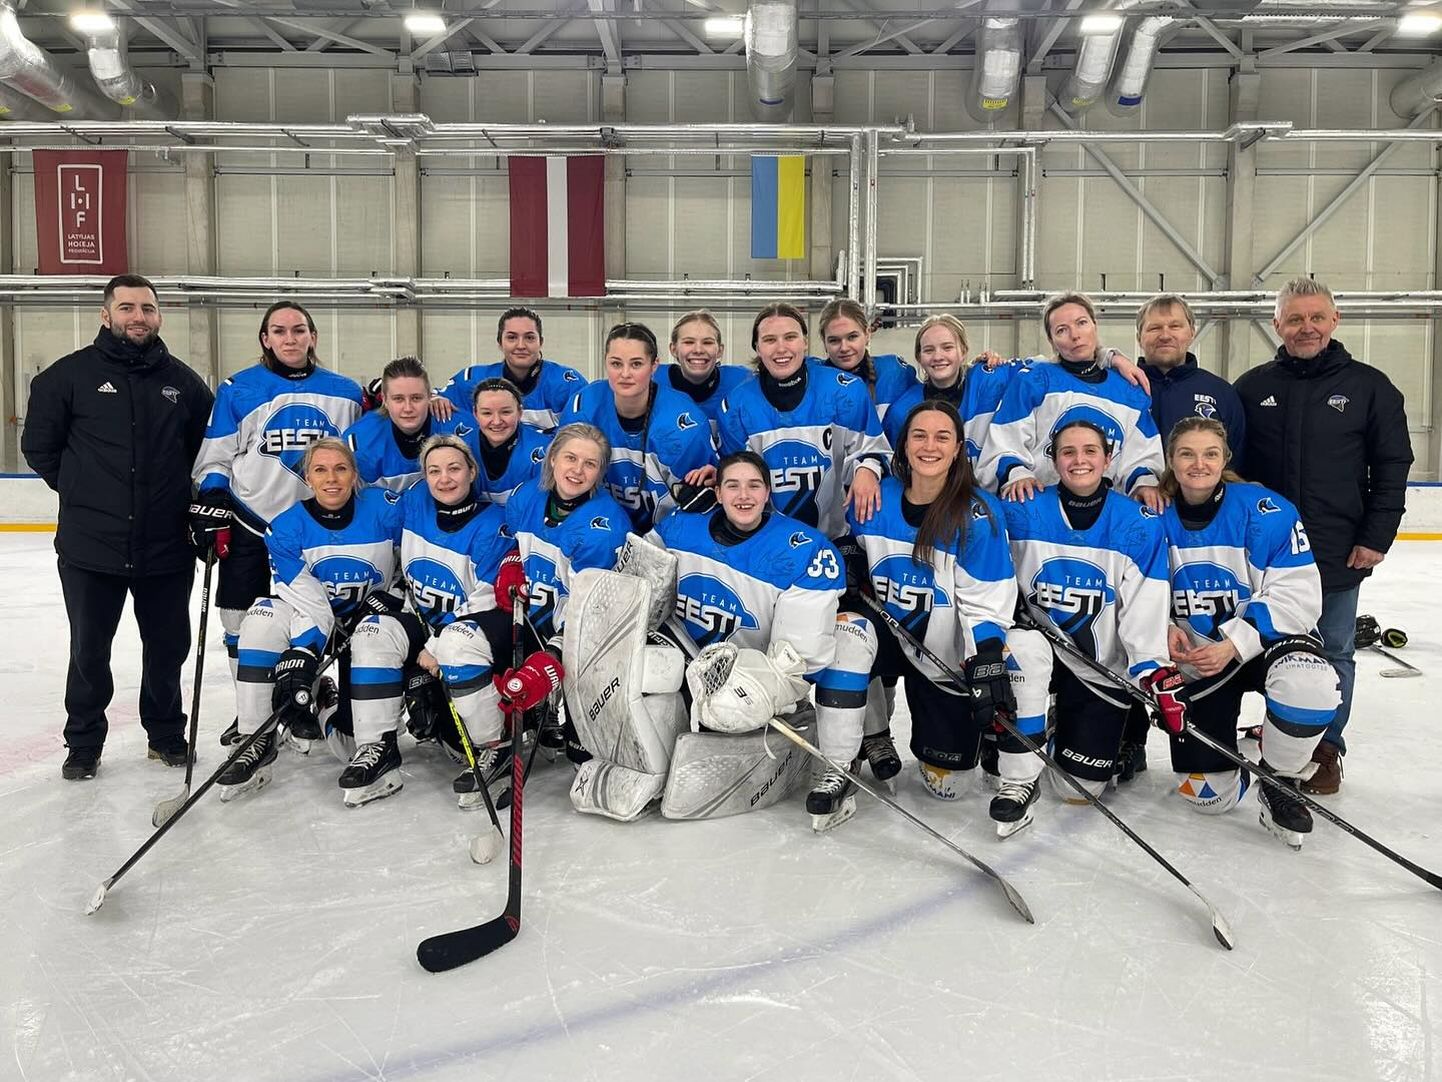 В воскресенье в Кохтла-Ярвеском ледовом холле начинается турнир третьего дивизиона группы "B" чемпионата мира по хоккею среди женщин. Стоит прийти в ледовый холл, чтобы поддержать сборную Эстонии.